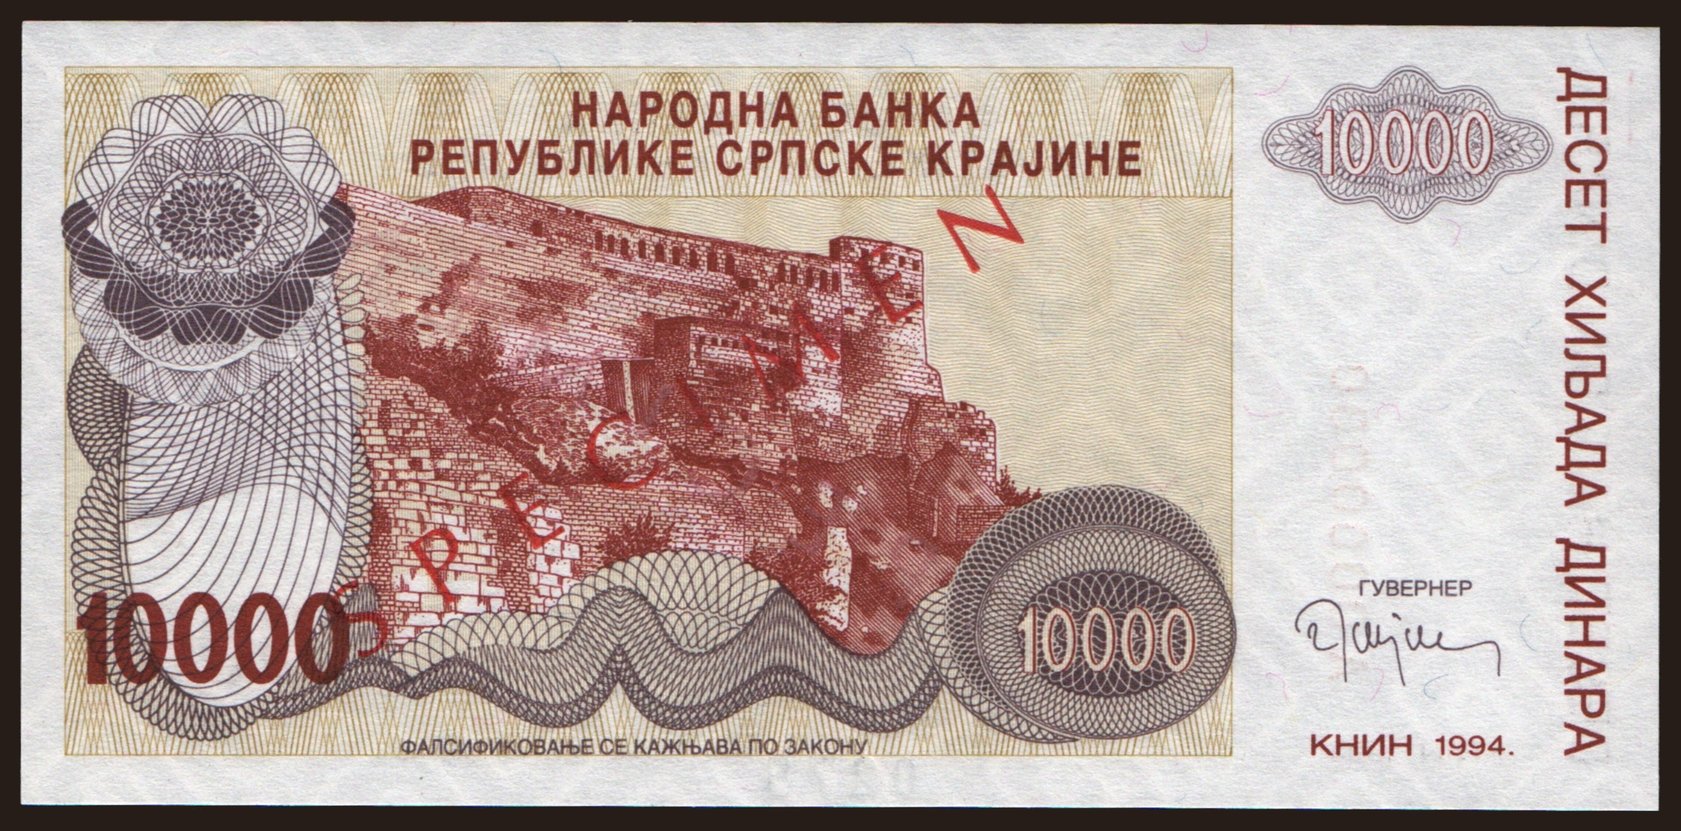 RSK, 10.000 dinara, 1994, SPECIMEN